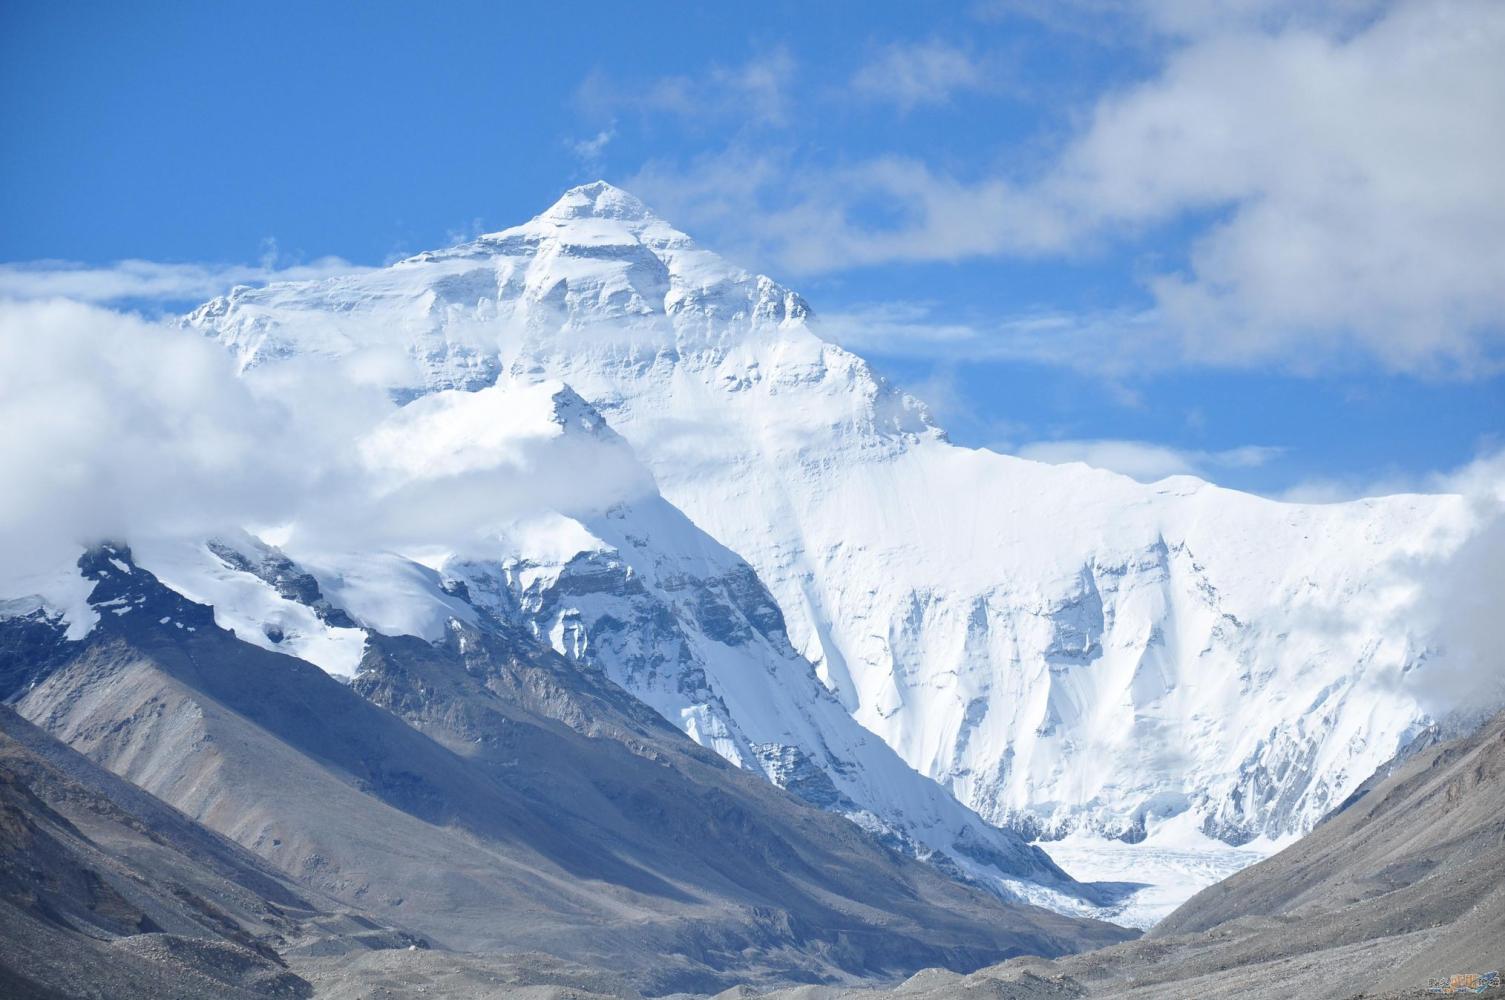 没想到, 珠穆朗玛峰这个世界最高峰, 只有一半是中国的